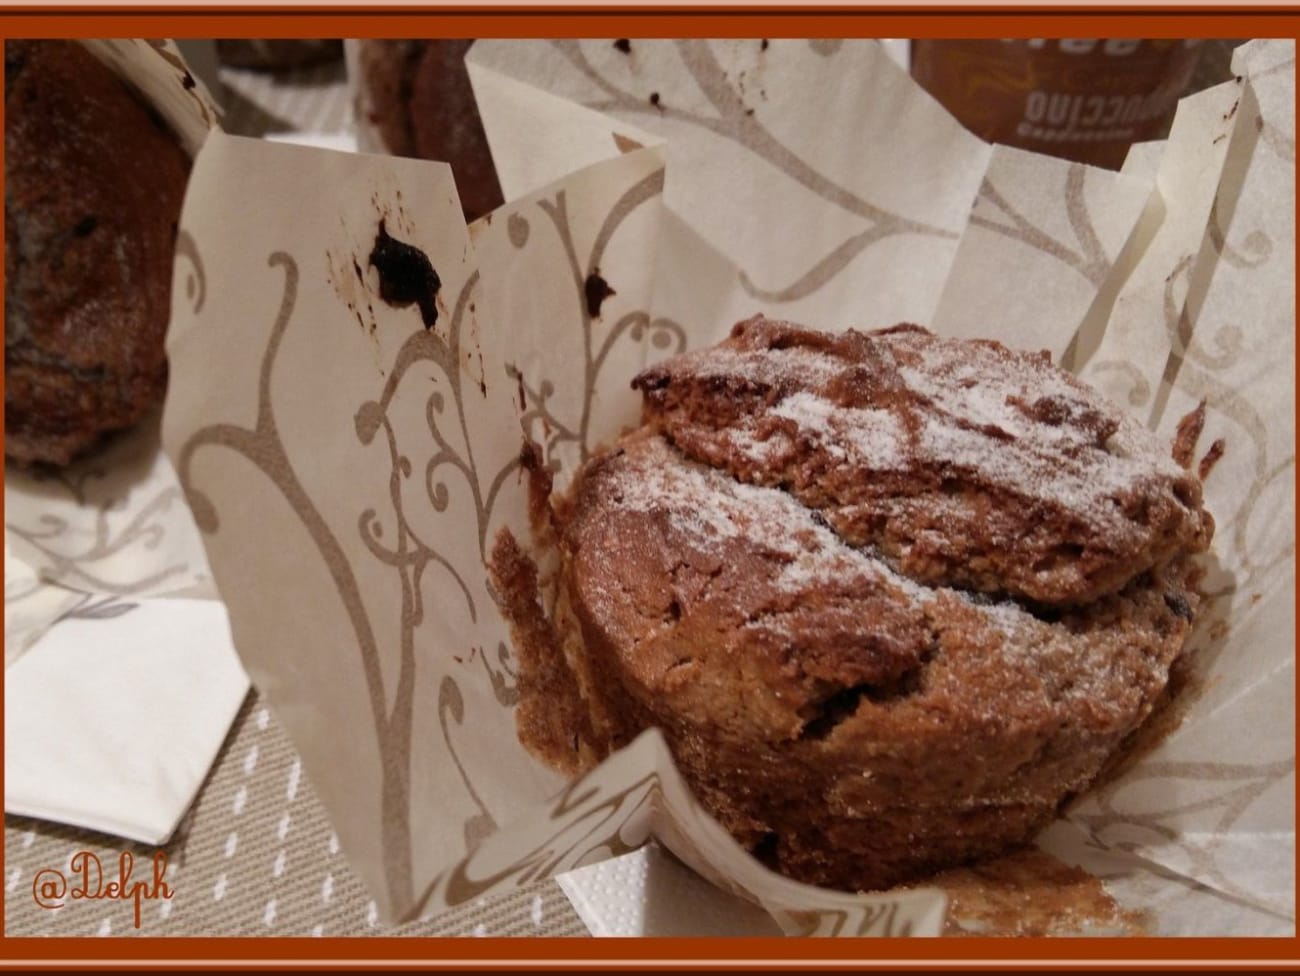 Muffins à la Crème de Marrons (healthy) - Sain & Délicieux